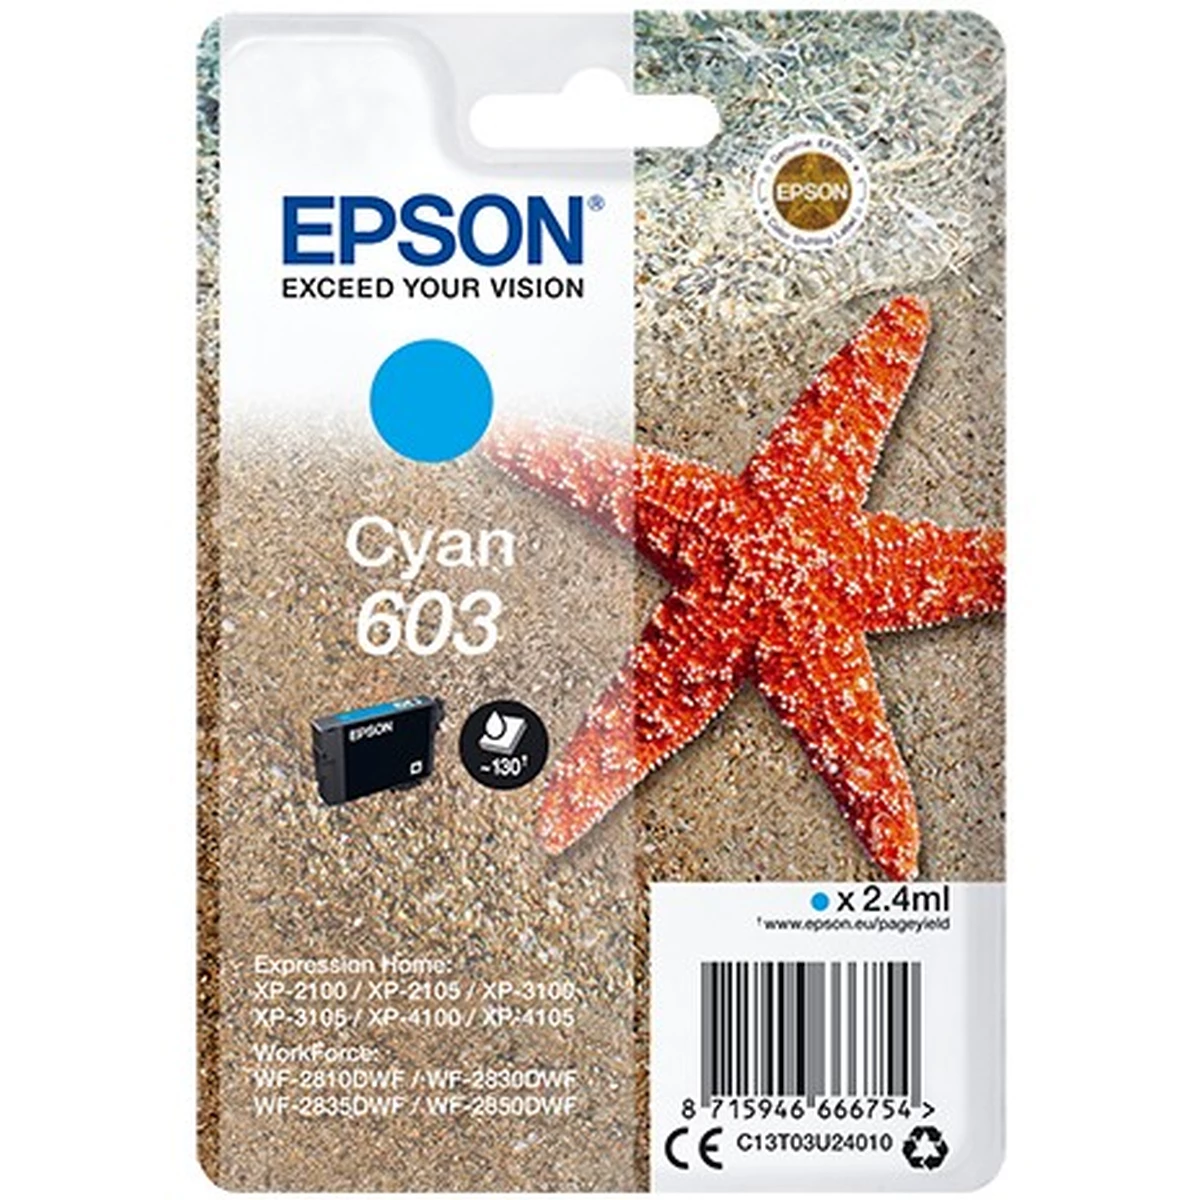 Epson Druckerpatrone '603' cyan 2,4 ml